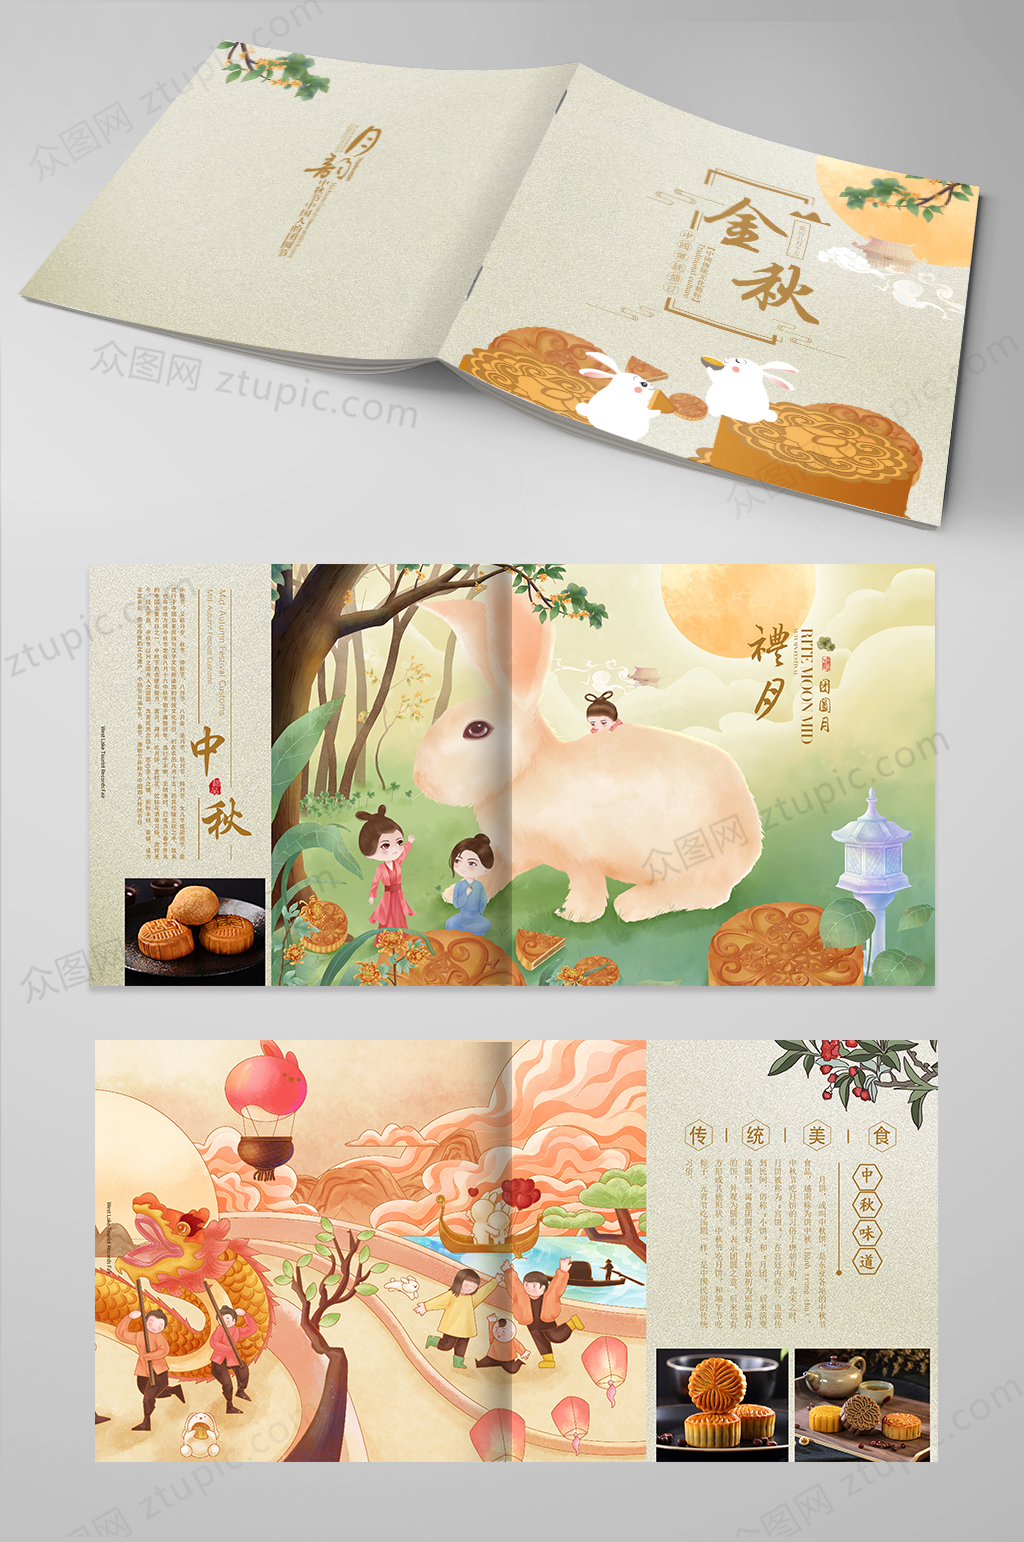 原创中秋节月饼画册设计